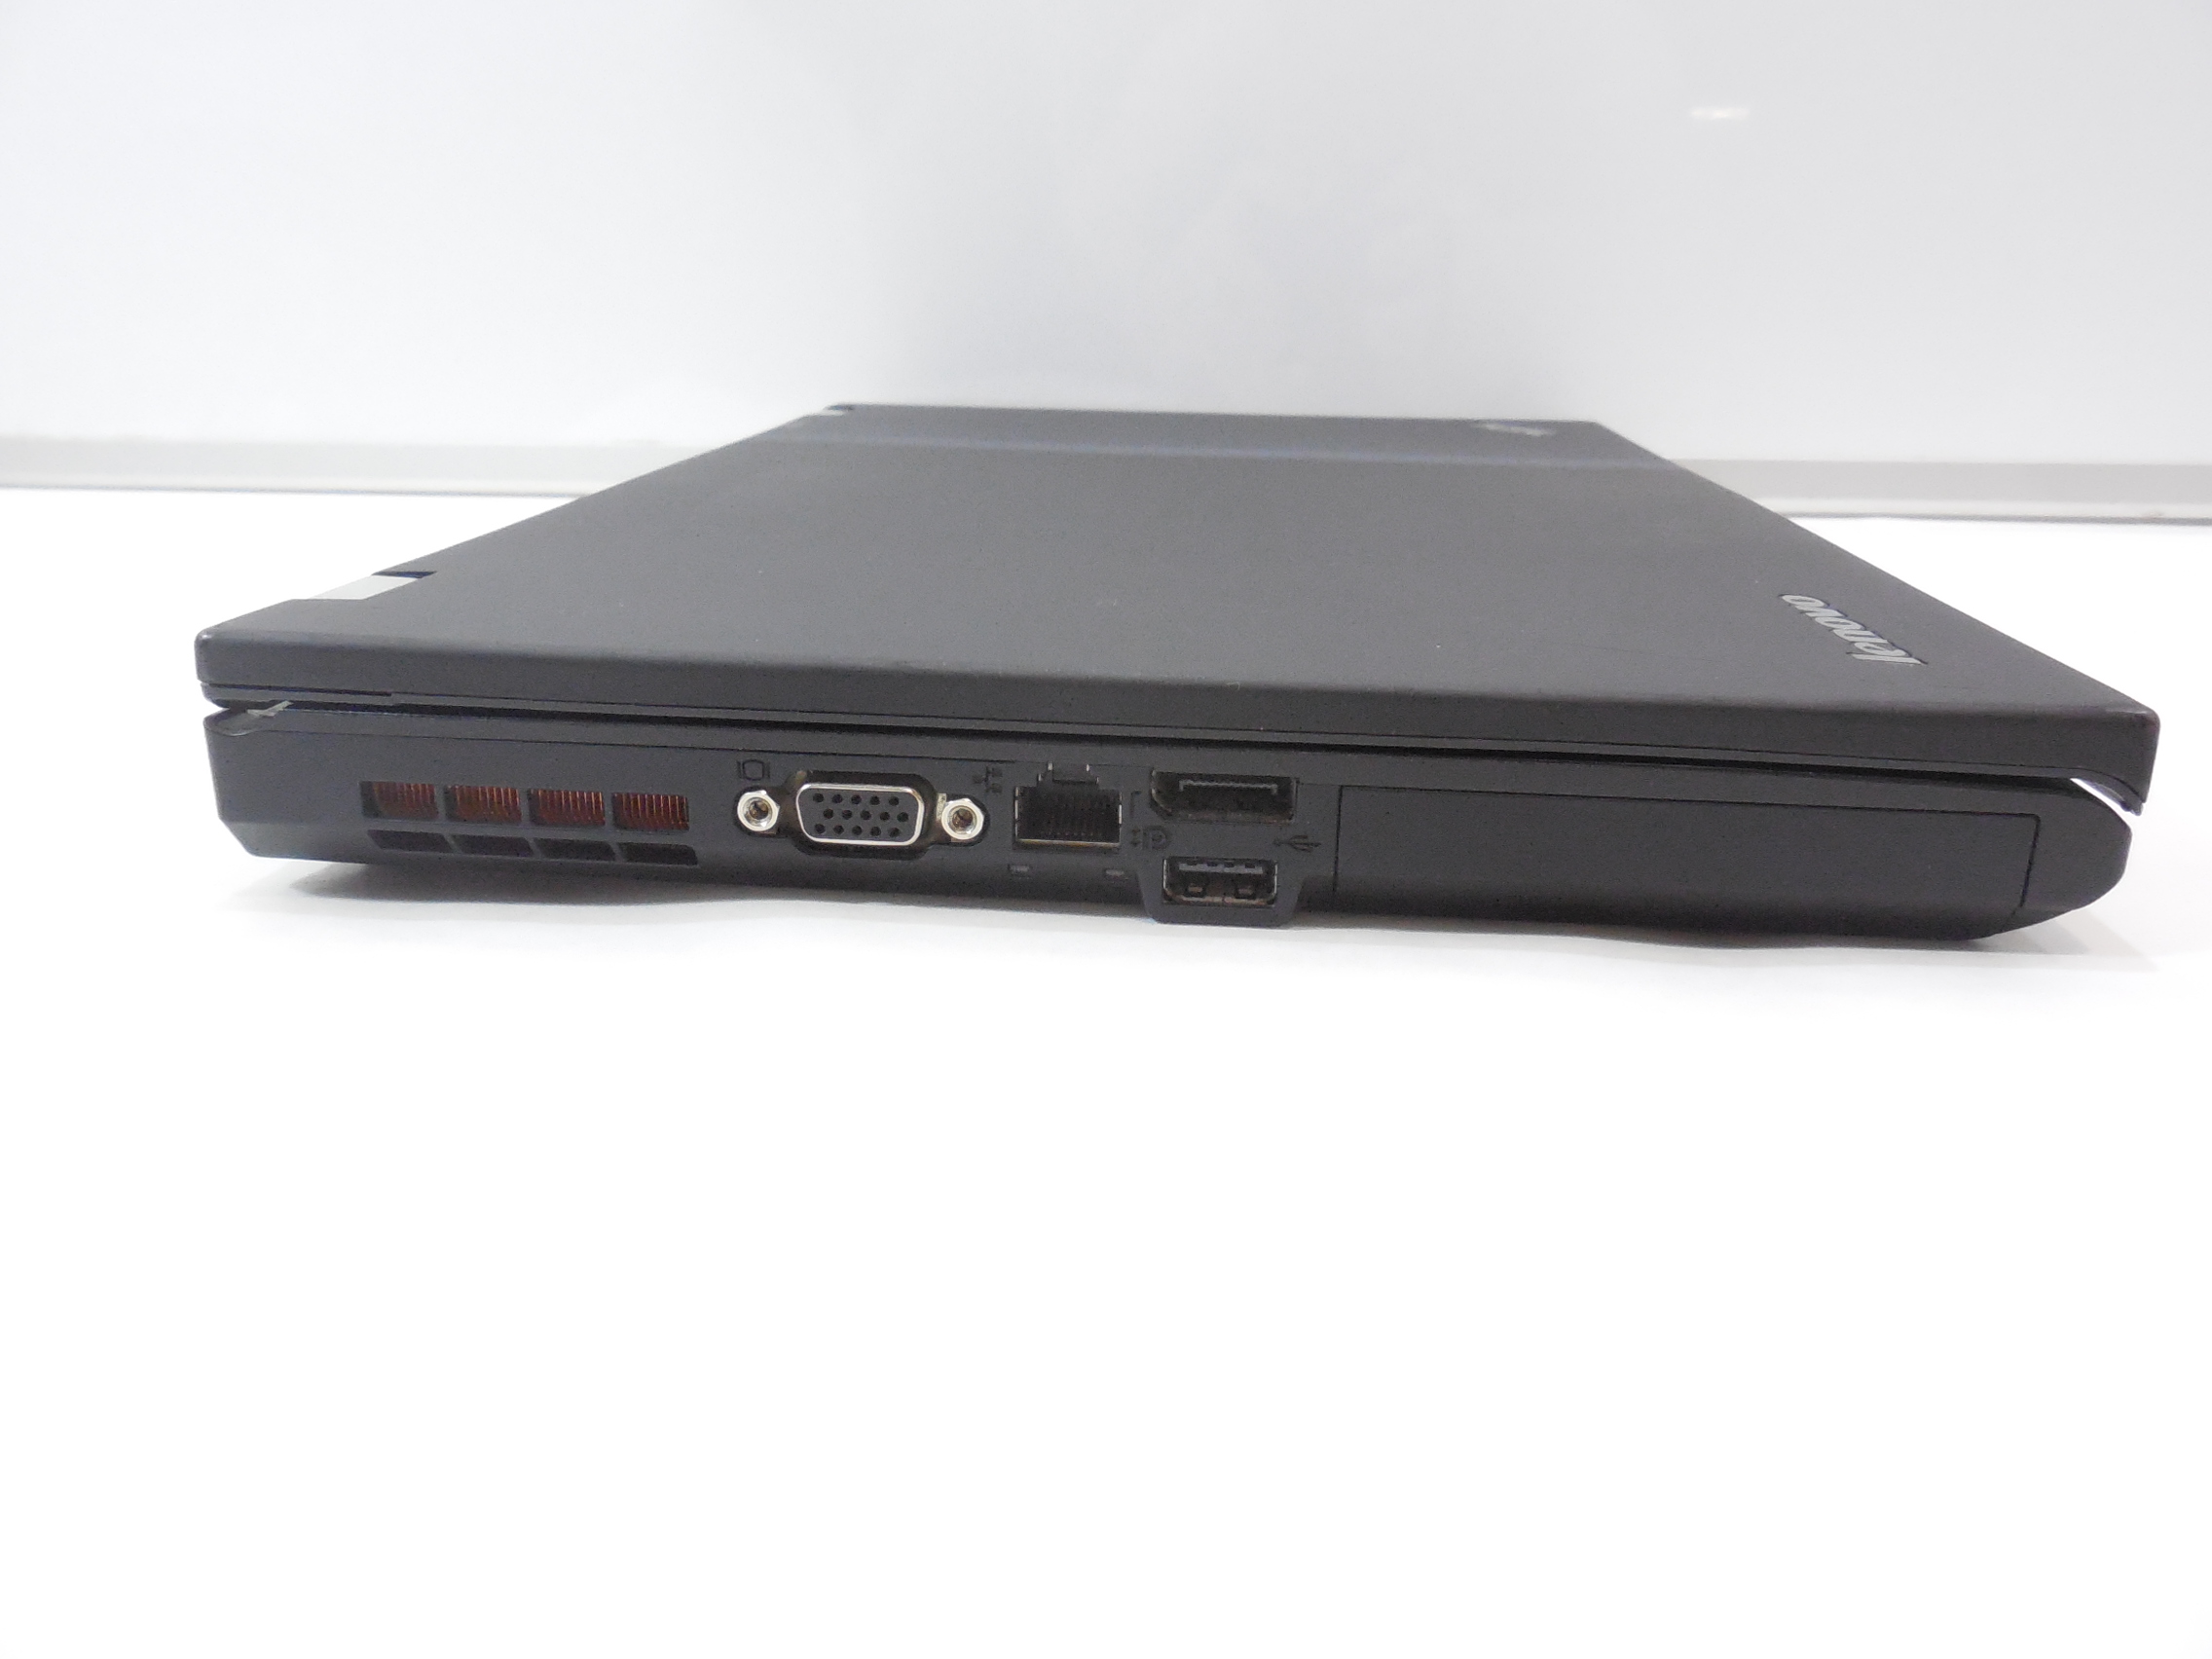 Купить Ноутбук Lenovo Thinkpad T420